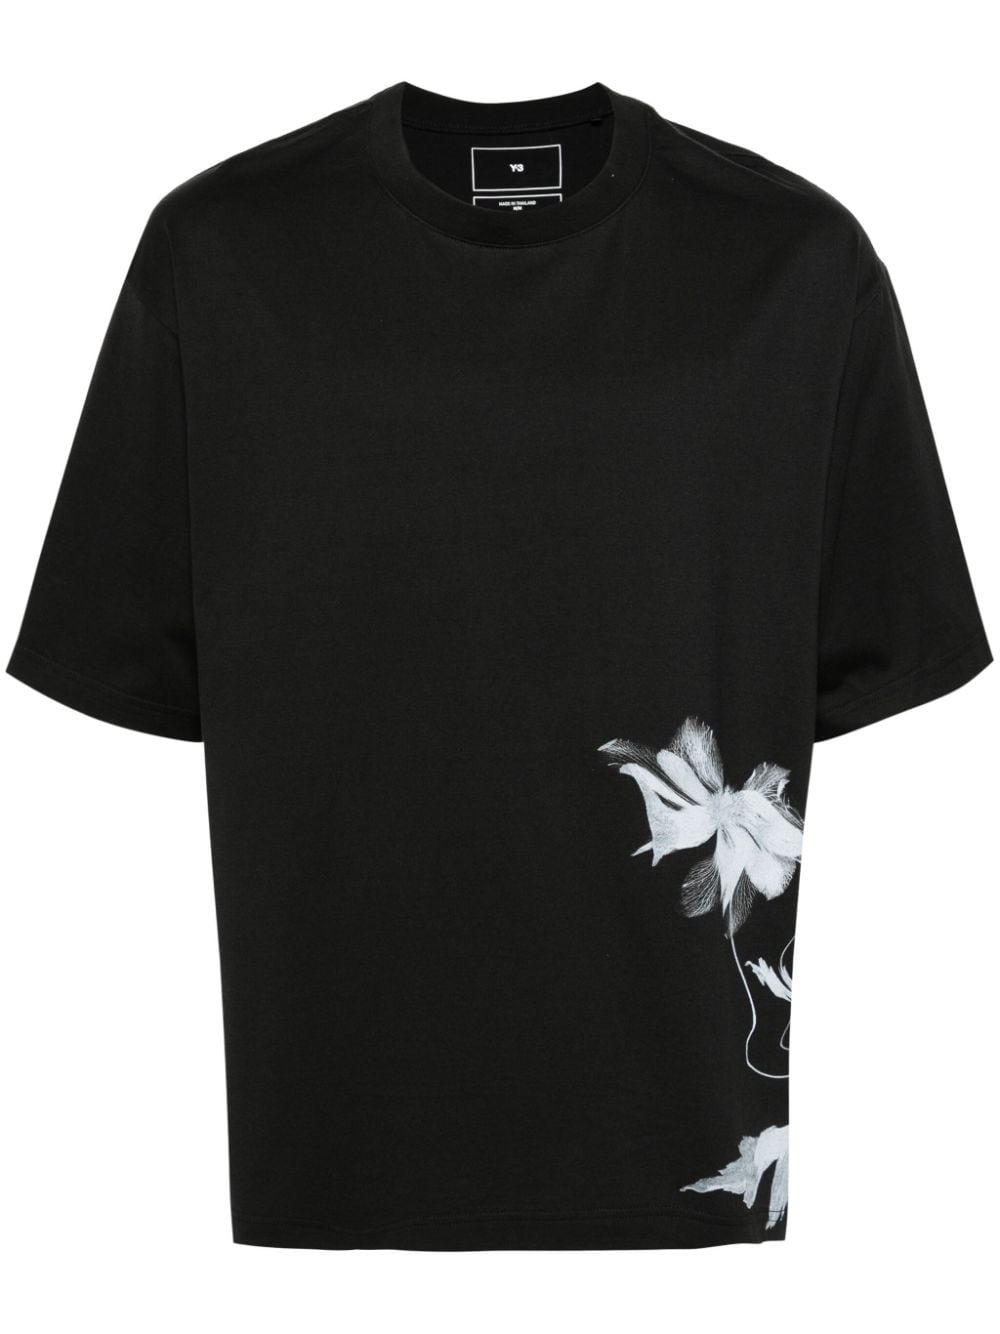 T-shirt nera stampa fiore